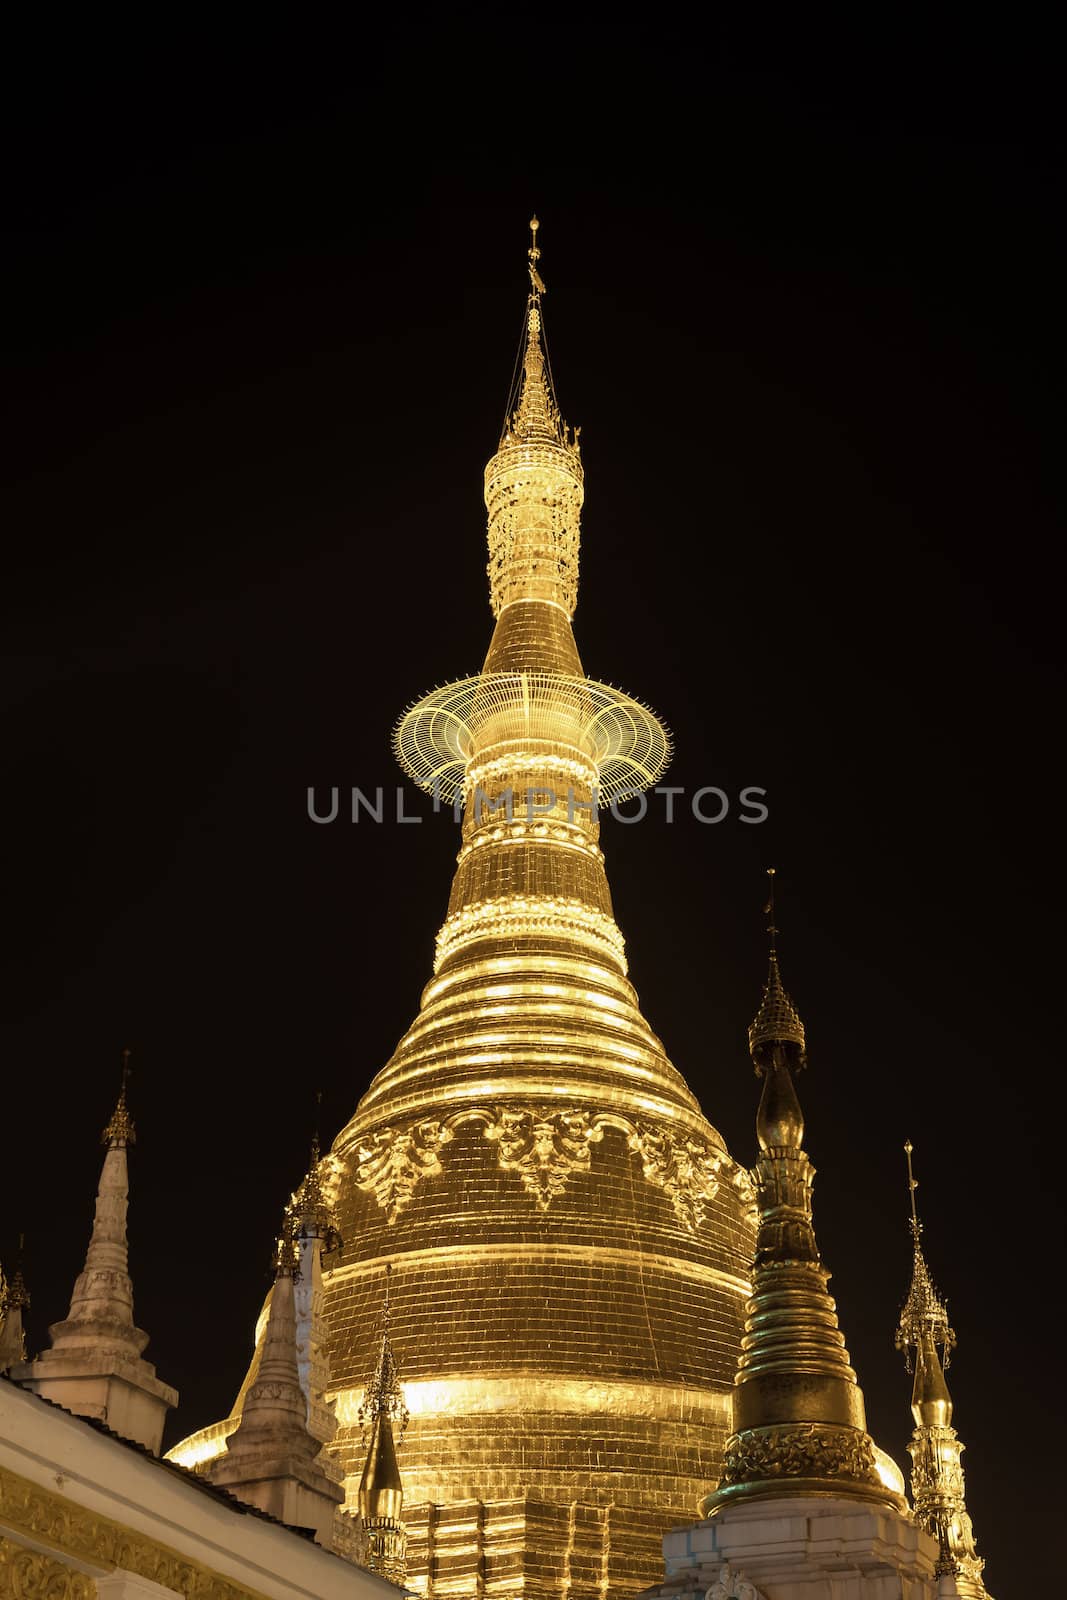 Shwedagon pagoda in Yangon, Burma (Myanmar) at night